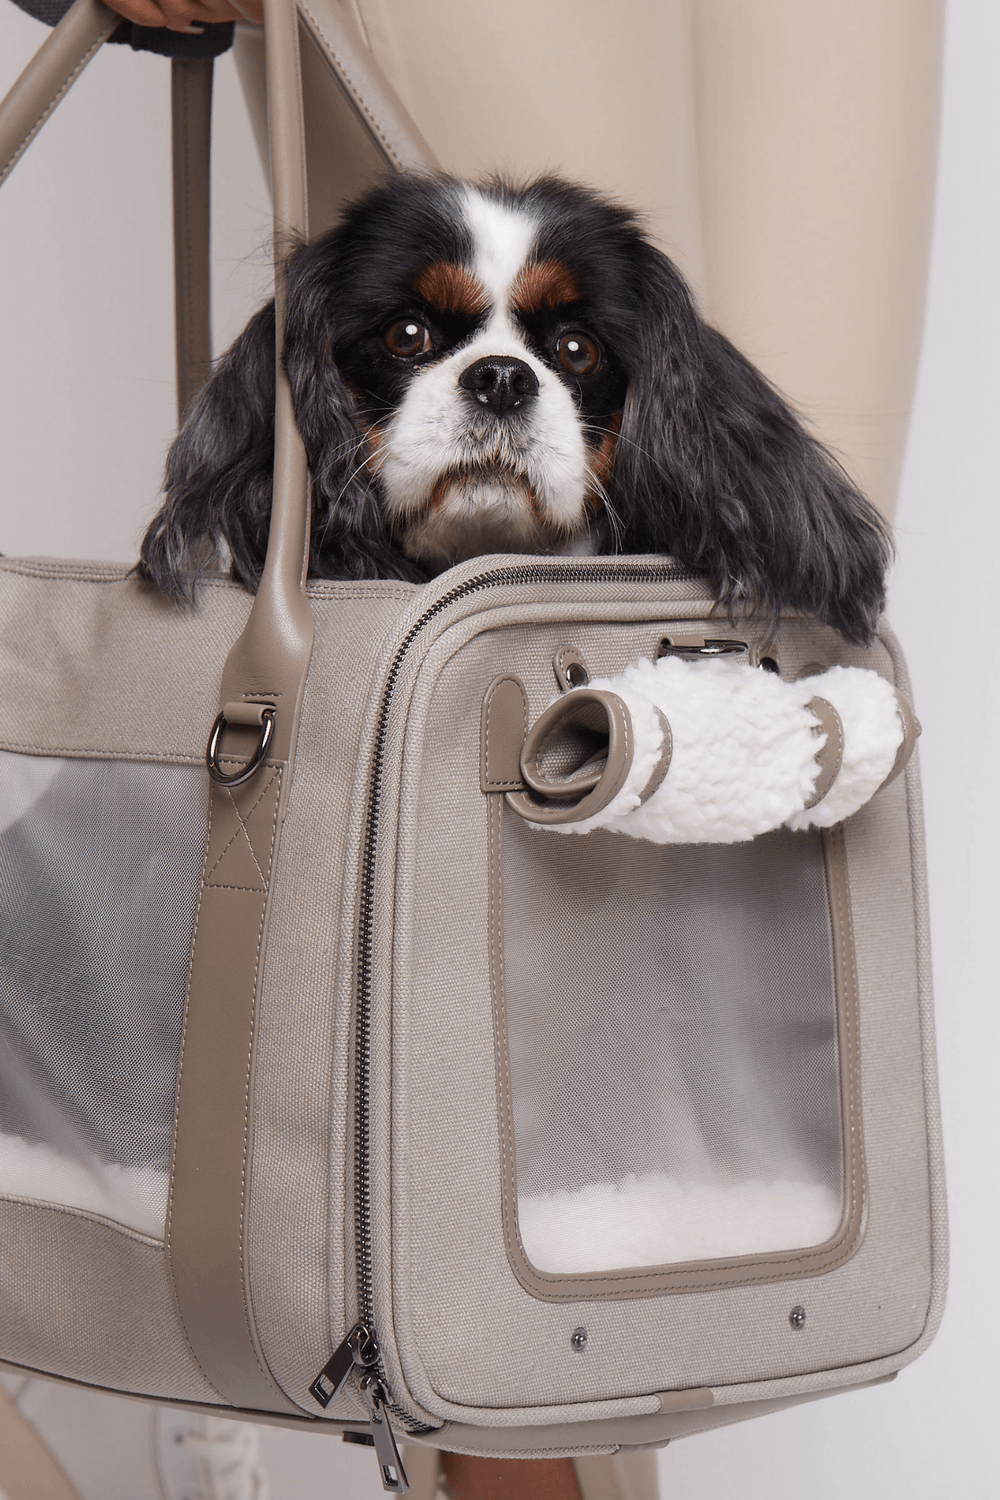 Western Style Luxury Designer Dog Carrier